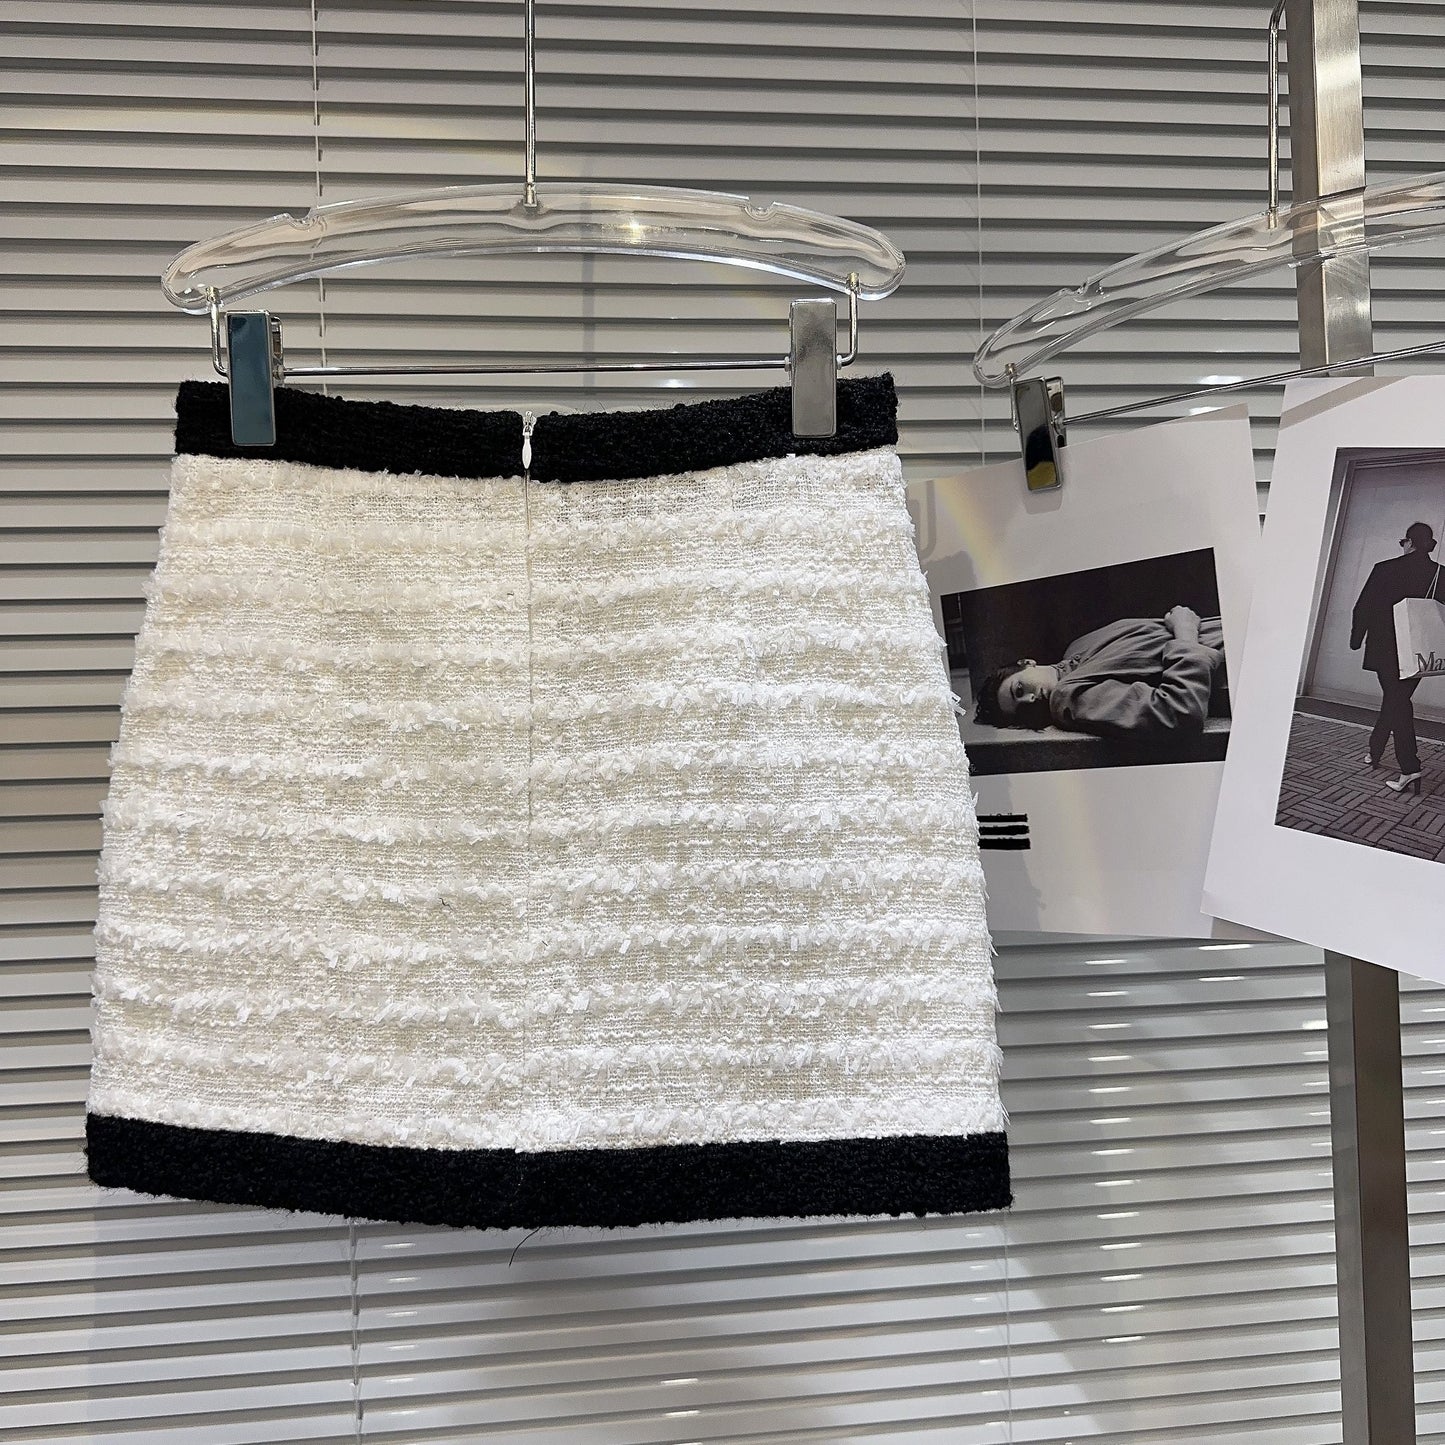 Melissa Jacket Skirt Set Fashion Closet Clothing